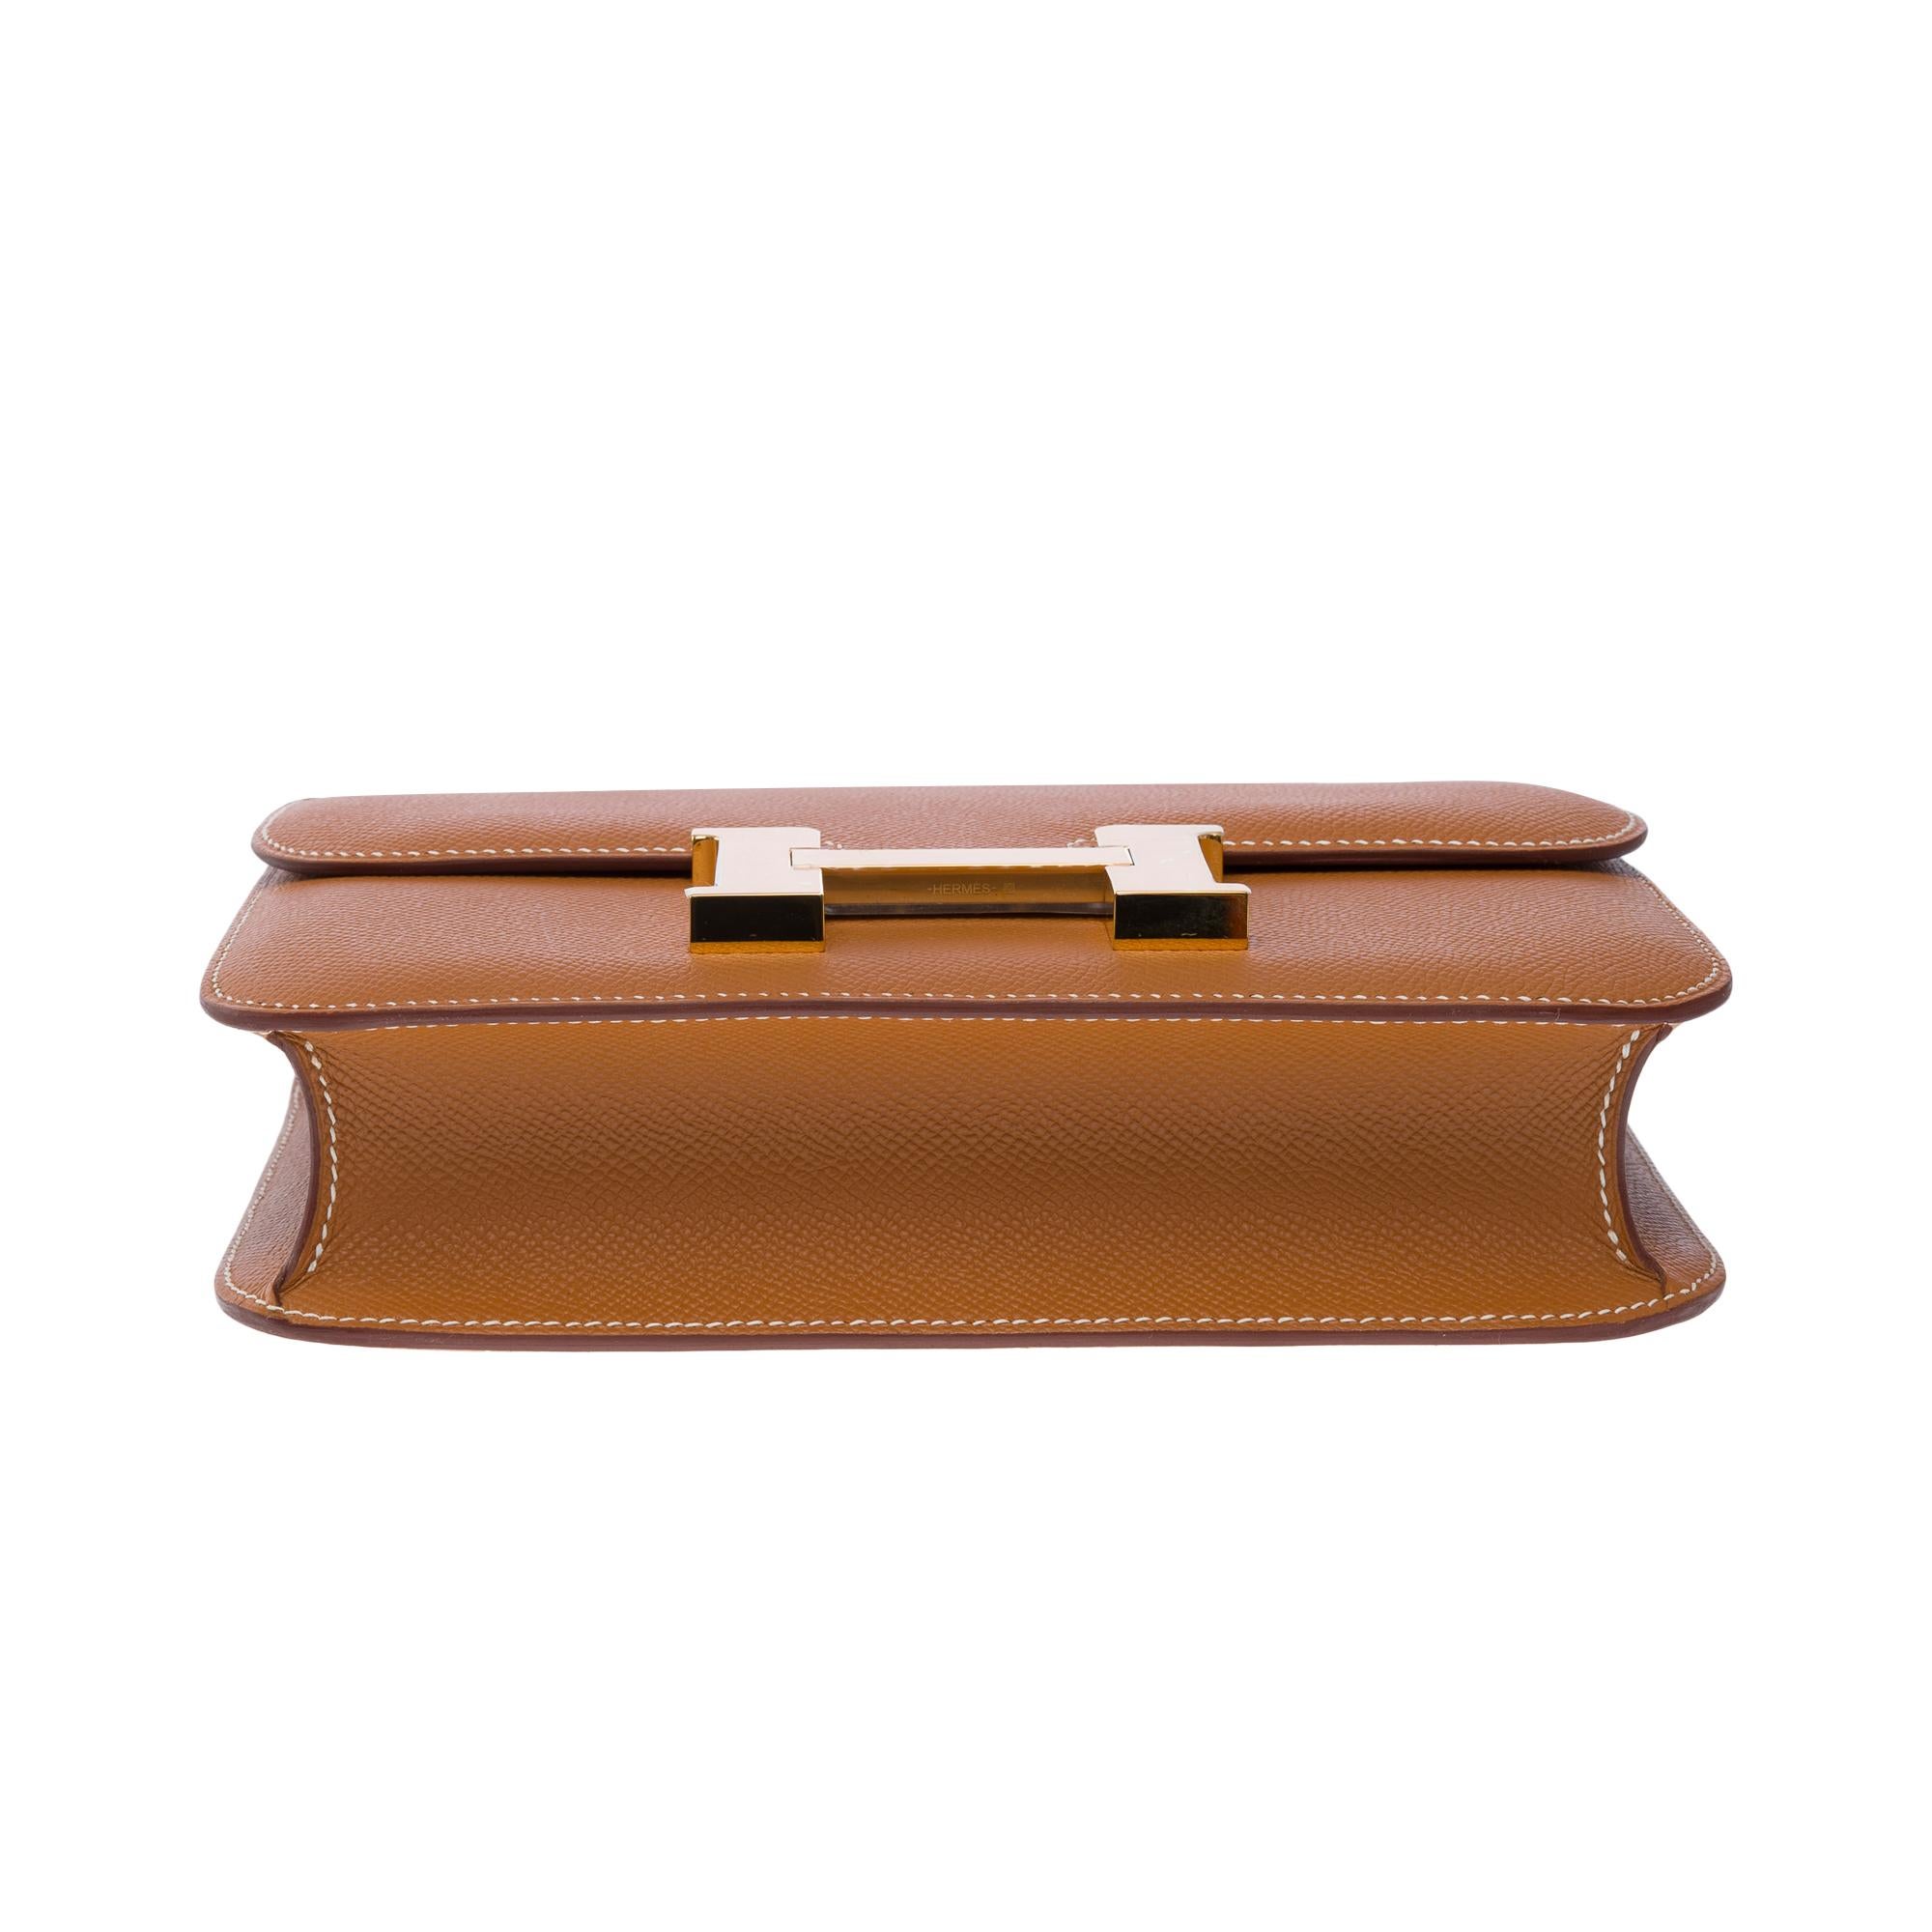 Brand New Hermès Constance 23 shoulder bag in Gold Epsom leather , GHW 5